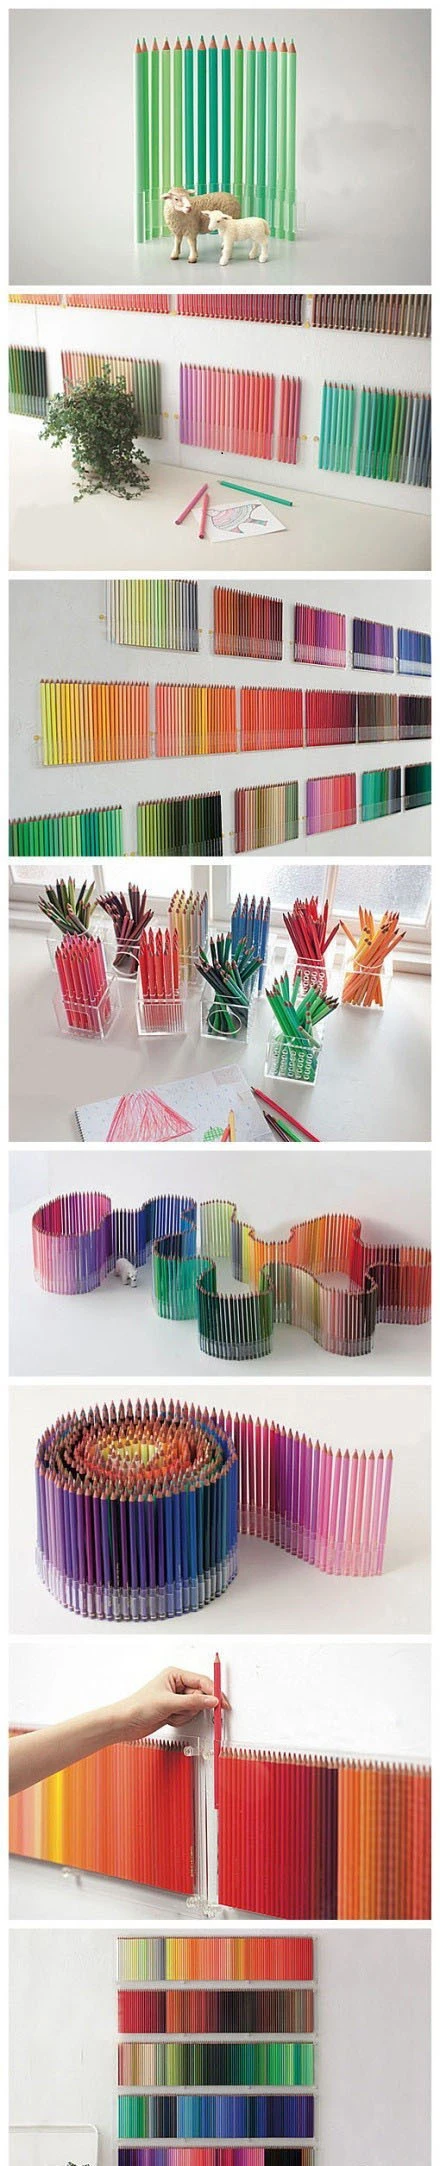 500种颜色的铅笔】这是FELISSIMO (芬理希梦)出品的500色铅笔(500